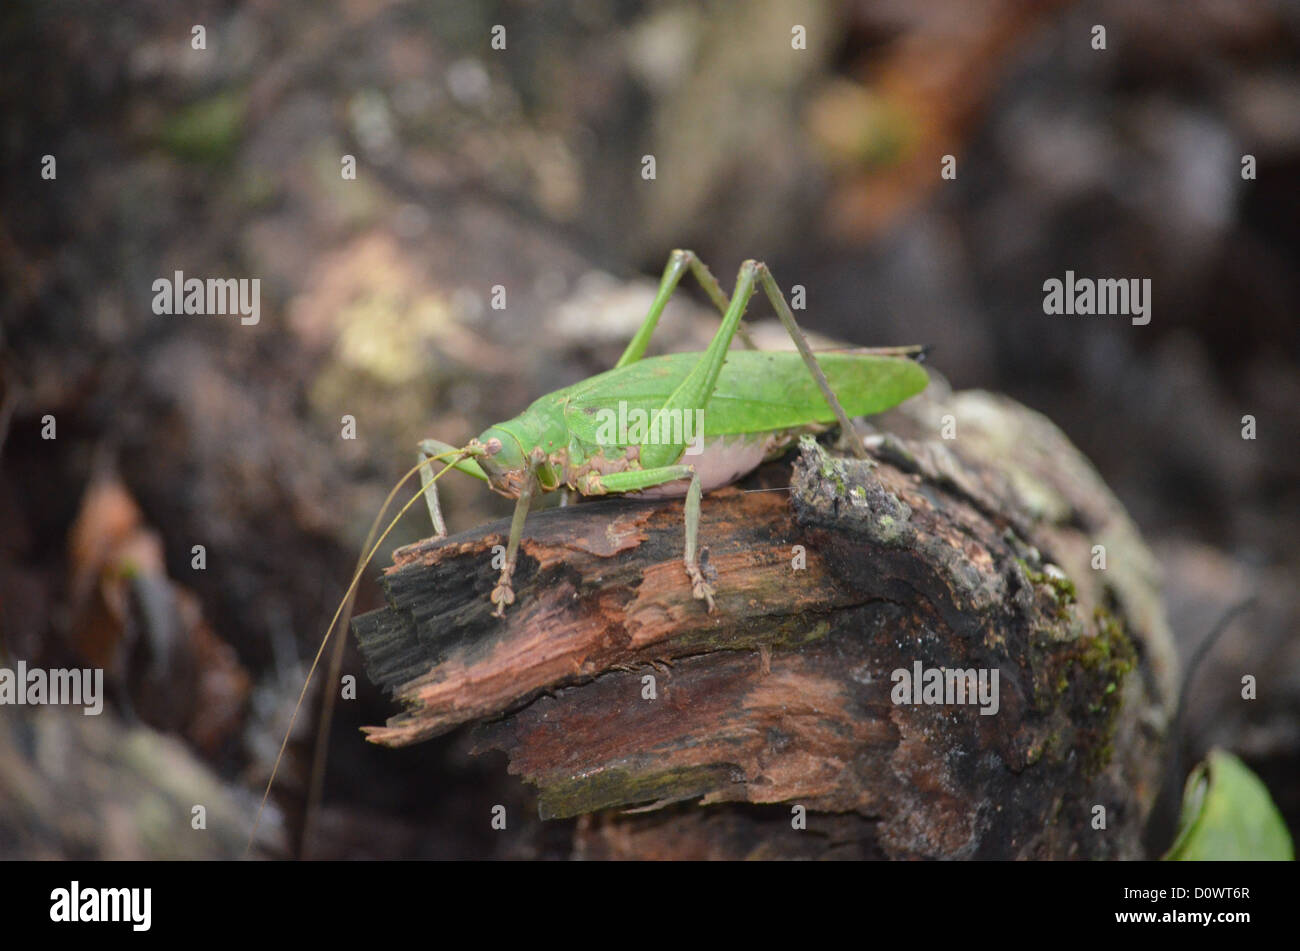 Grasshopper on a branch in the Madre de Dios region of the Peruvian Amazon Stock Photo